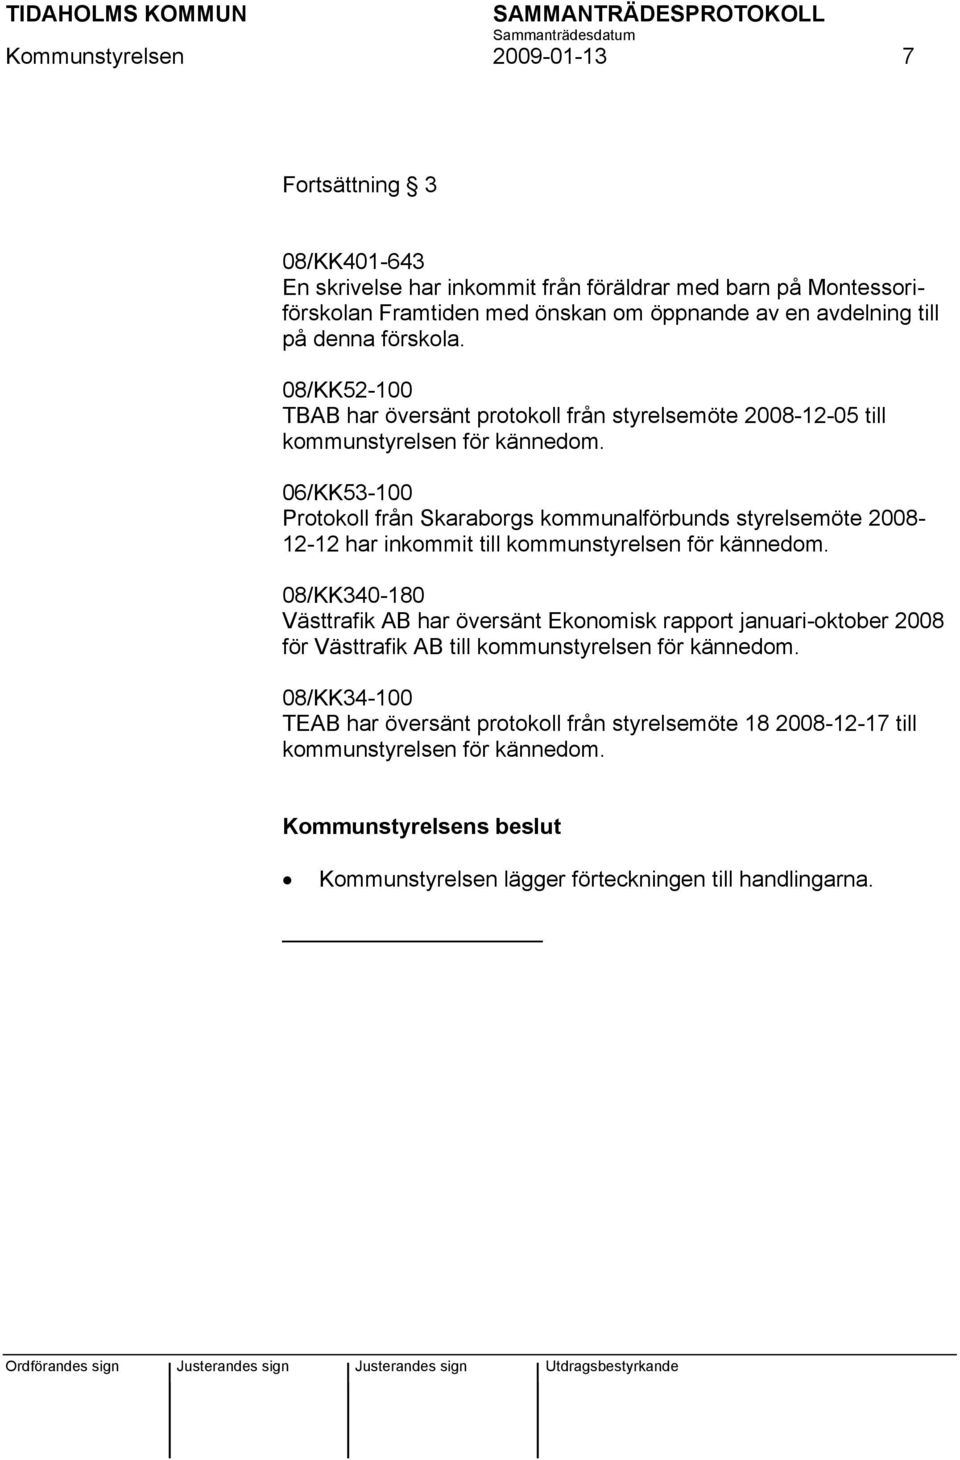 06/KK53-100 Protokoll från Skaraborgs kommunalförbunds styrelsemöte 2008-12-12 har inkommit till kommunstyrelsen för kännedom.